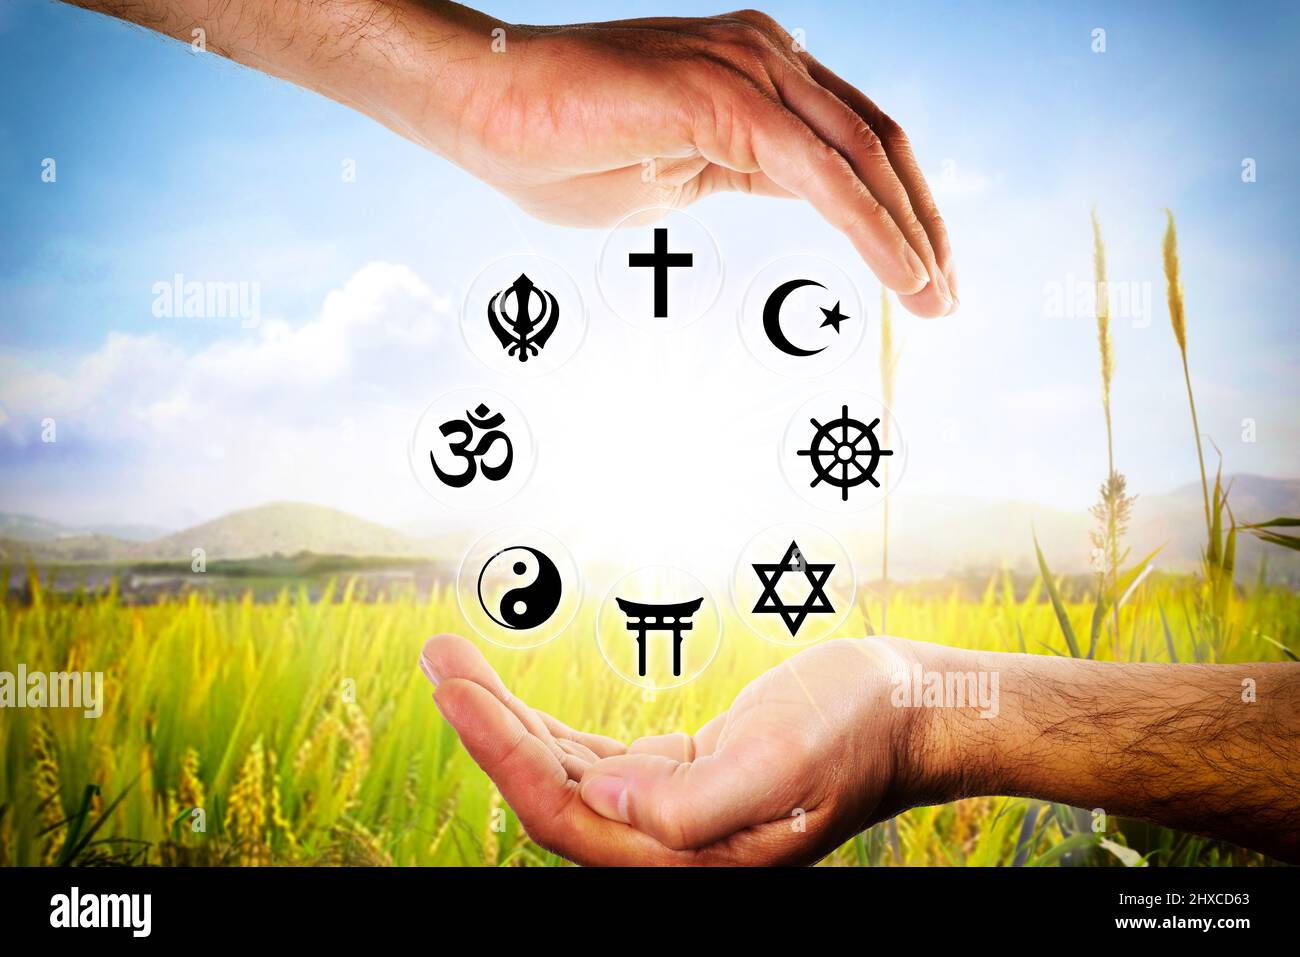 Mains englobant les symboles des religions les plus représentatives avec un fond de nature. Composition horizontale. Banque D'Images